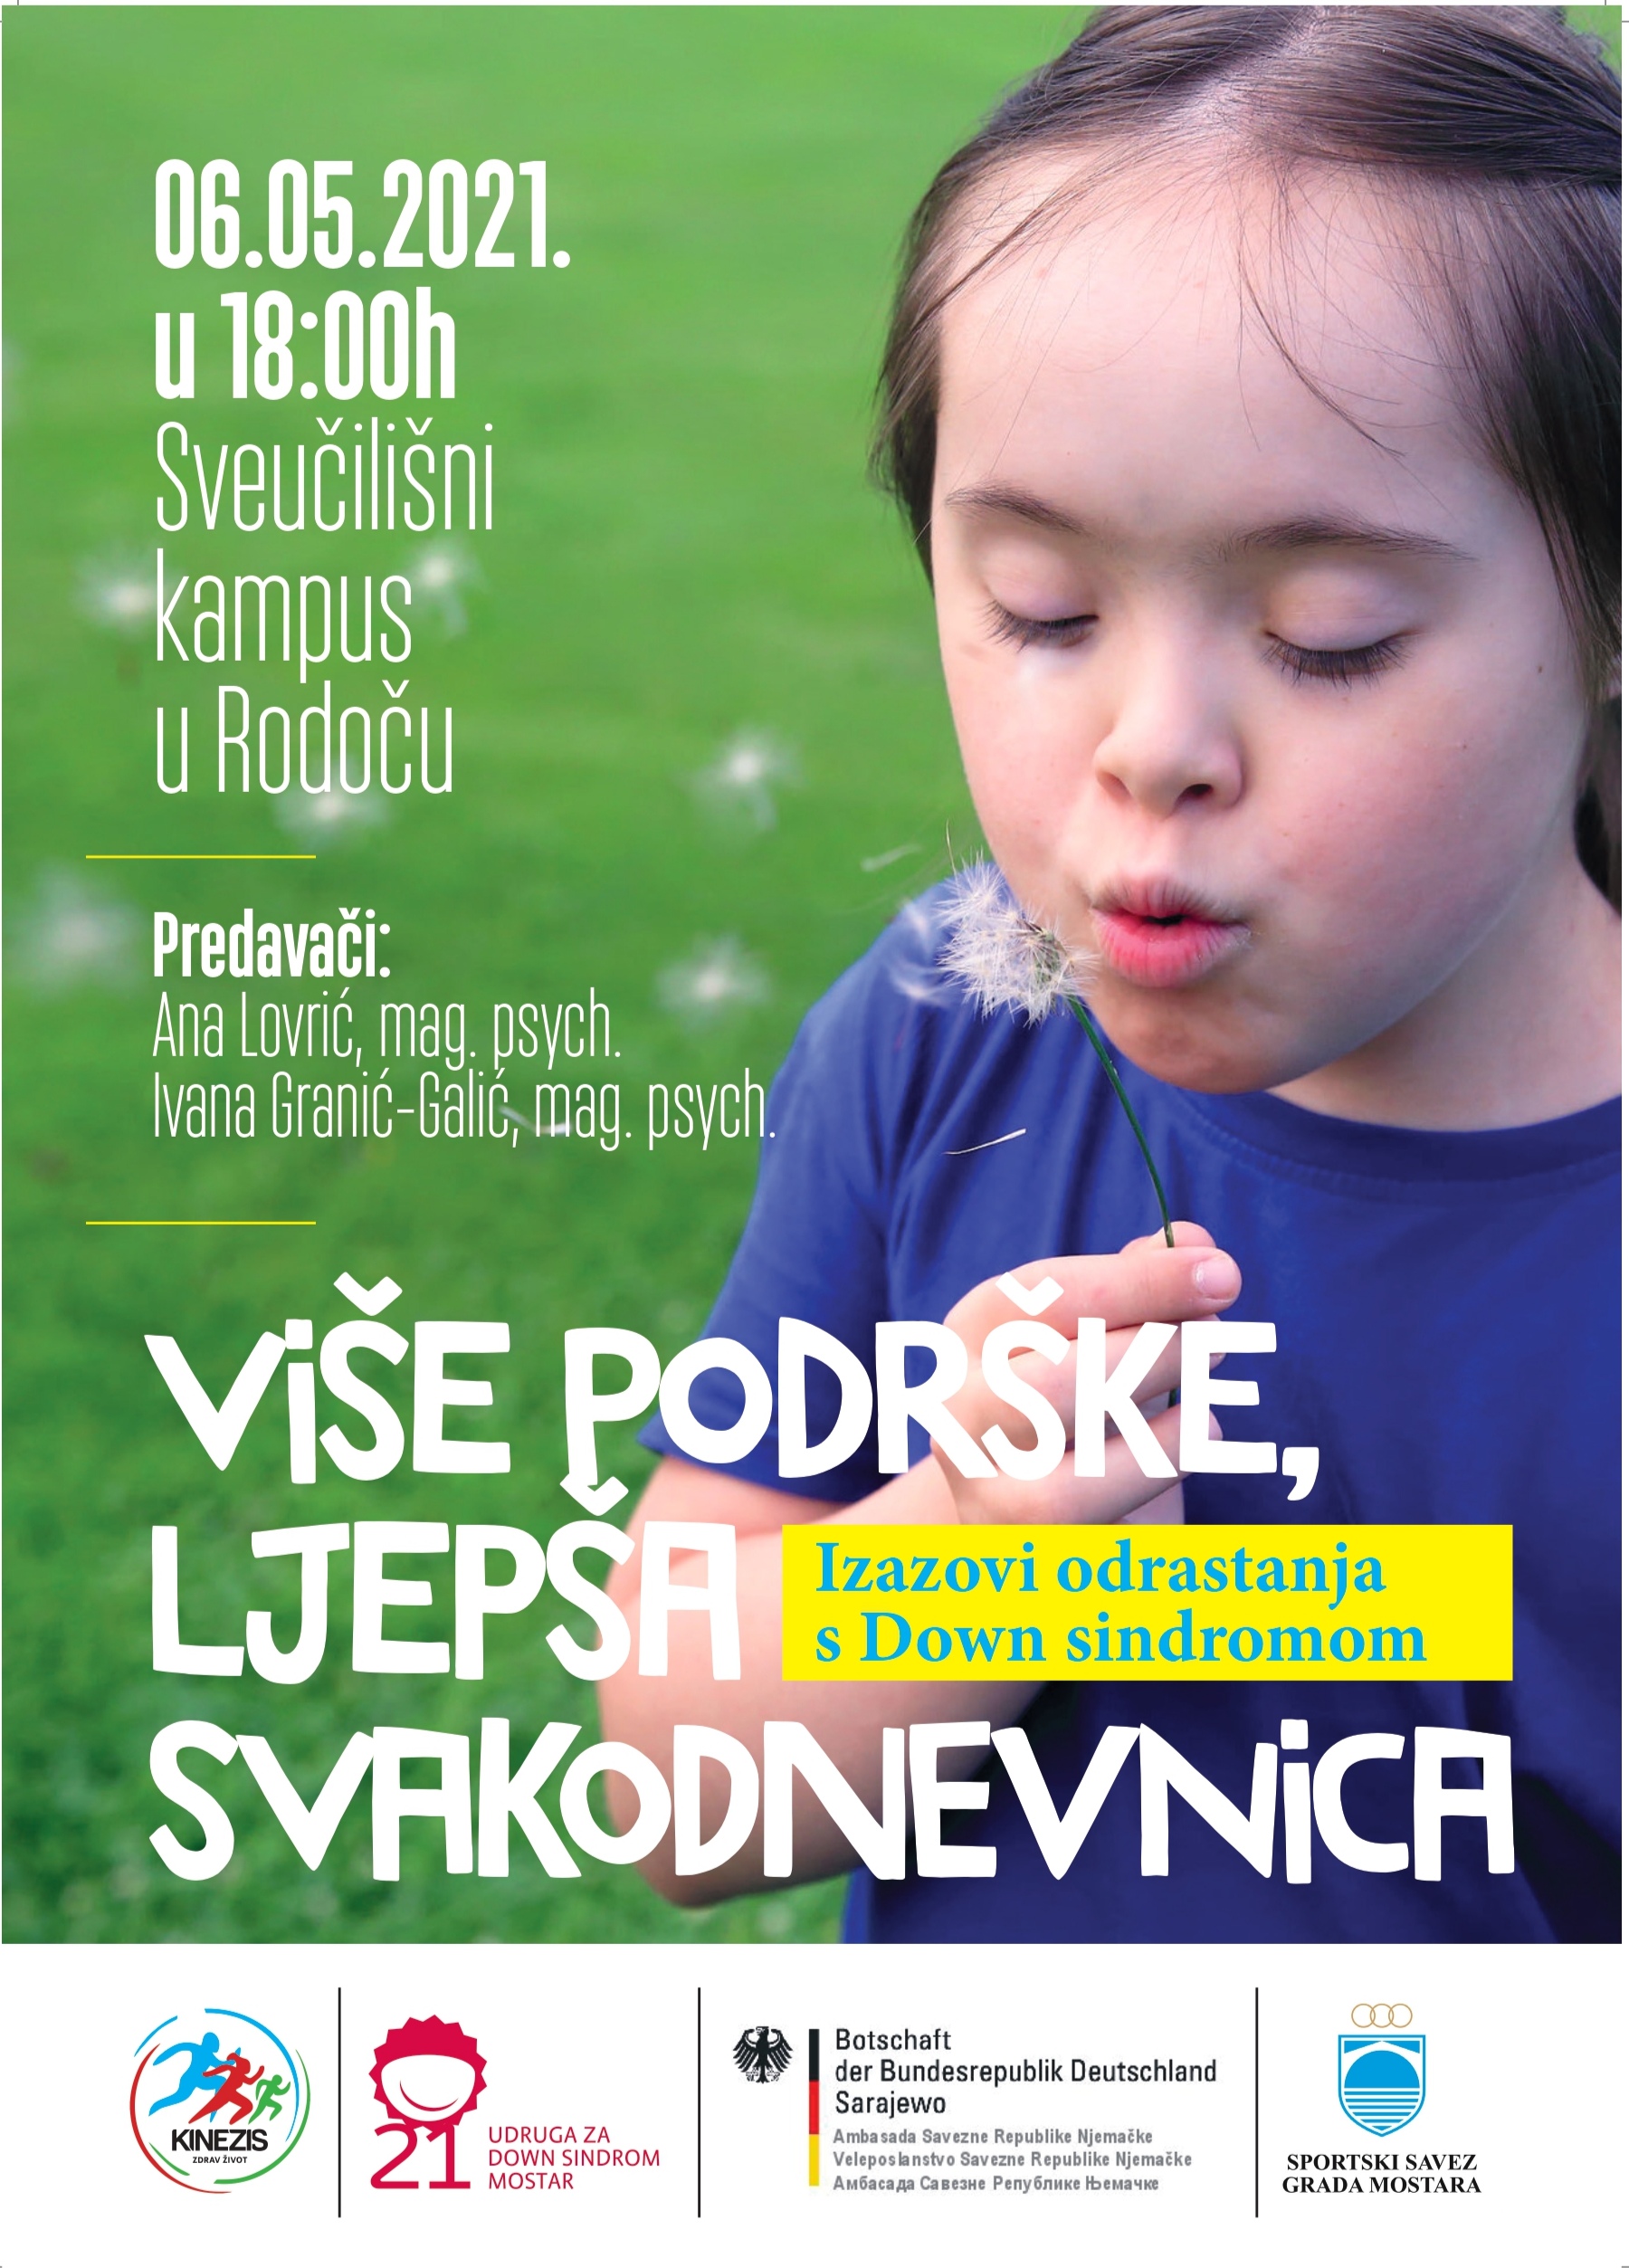 Mostar: Predavanje  - Izazovi odrastanja s Down sindromom